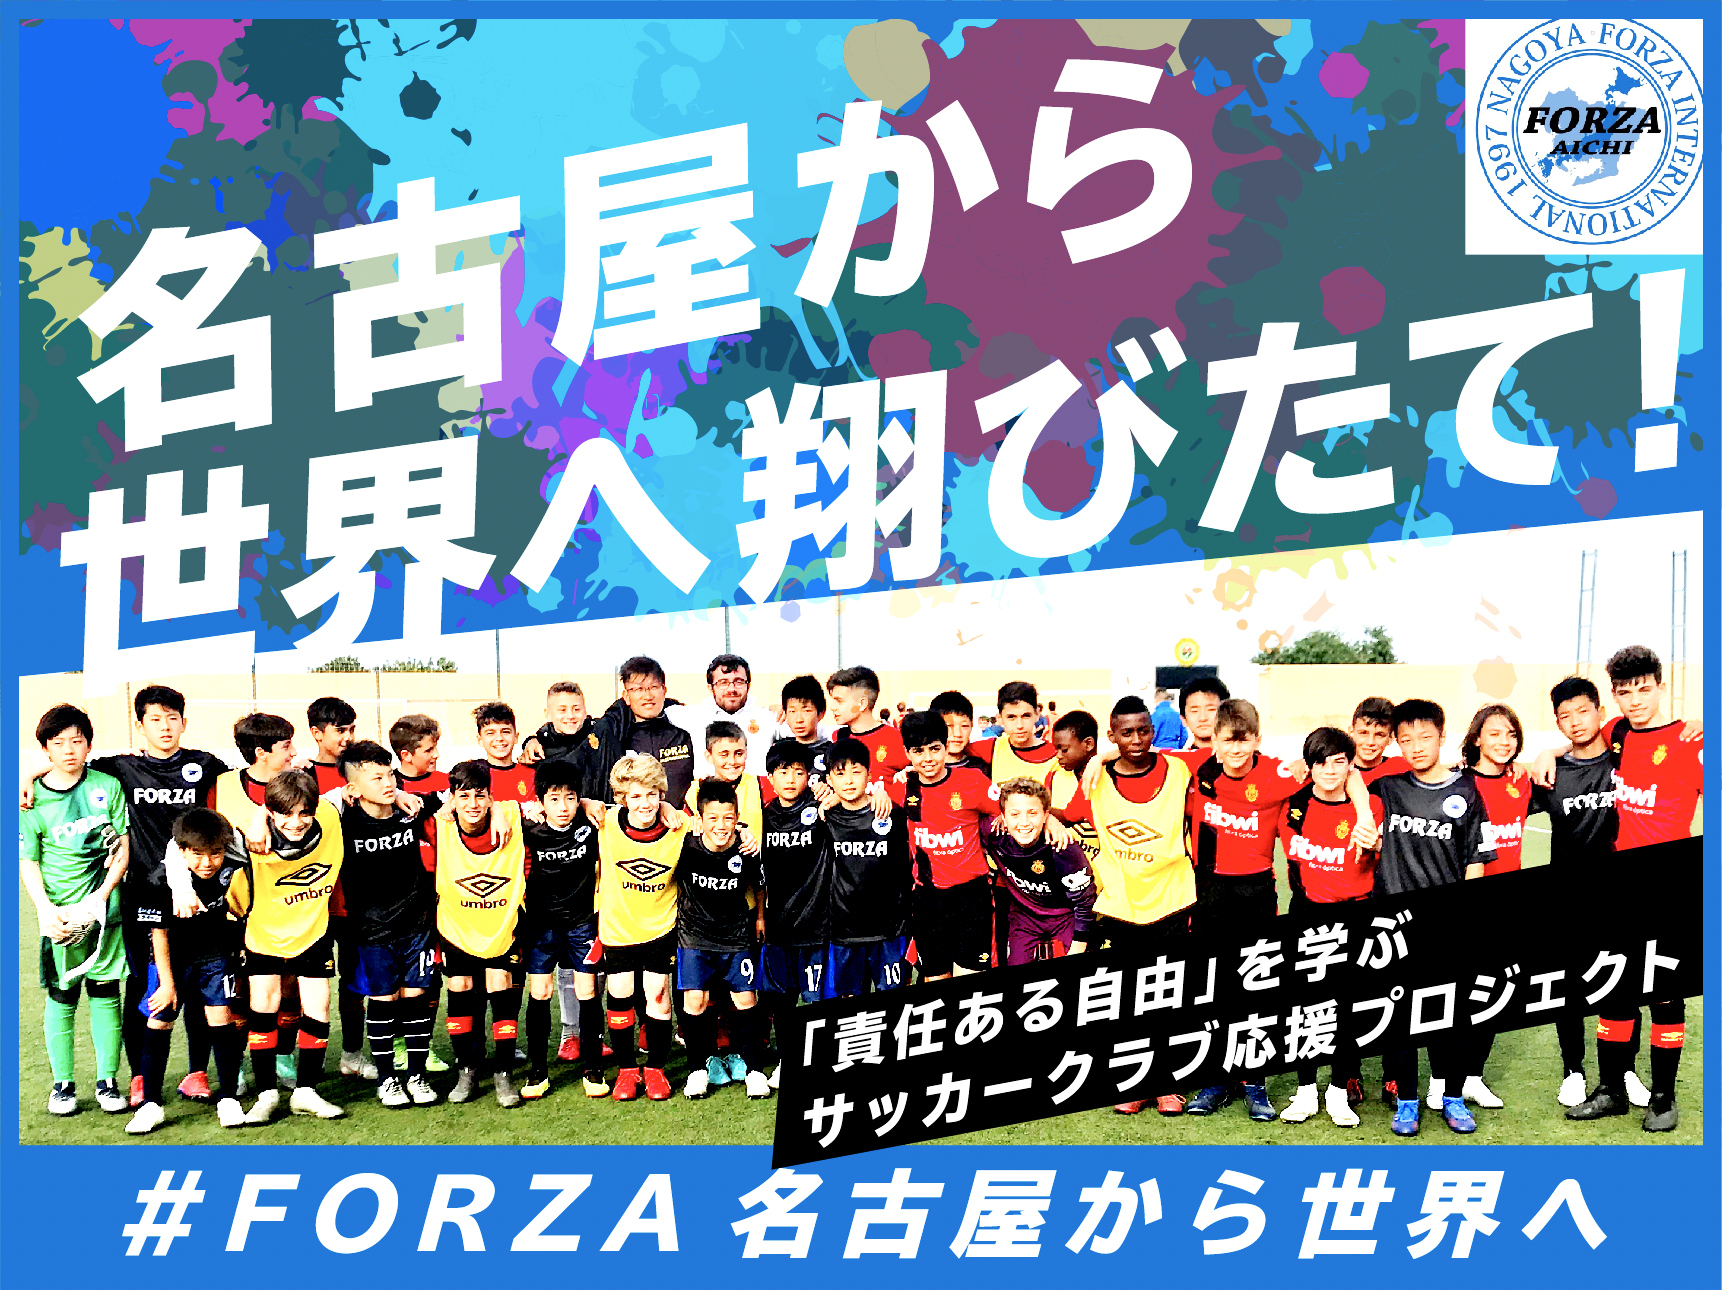 名古屋から世界へ ジュニアサッカークラブ U 15 Forza International がスポチュニティでクラウドファンディングを実施 スポチュニティ株式会社のプレスリリース